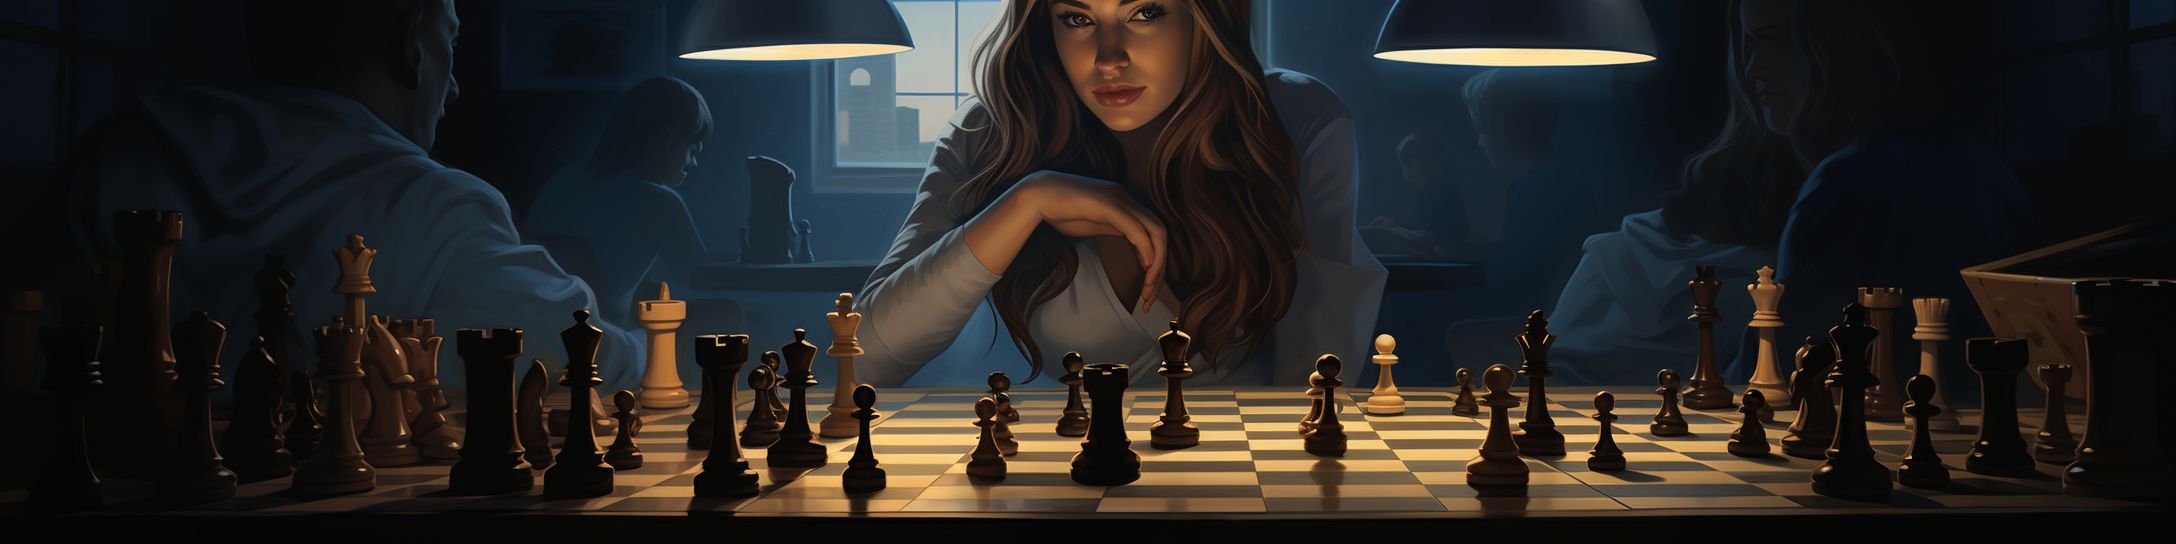 L'effet de Judit Polgar sur les joueuses d'échecs